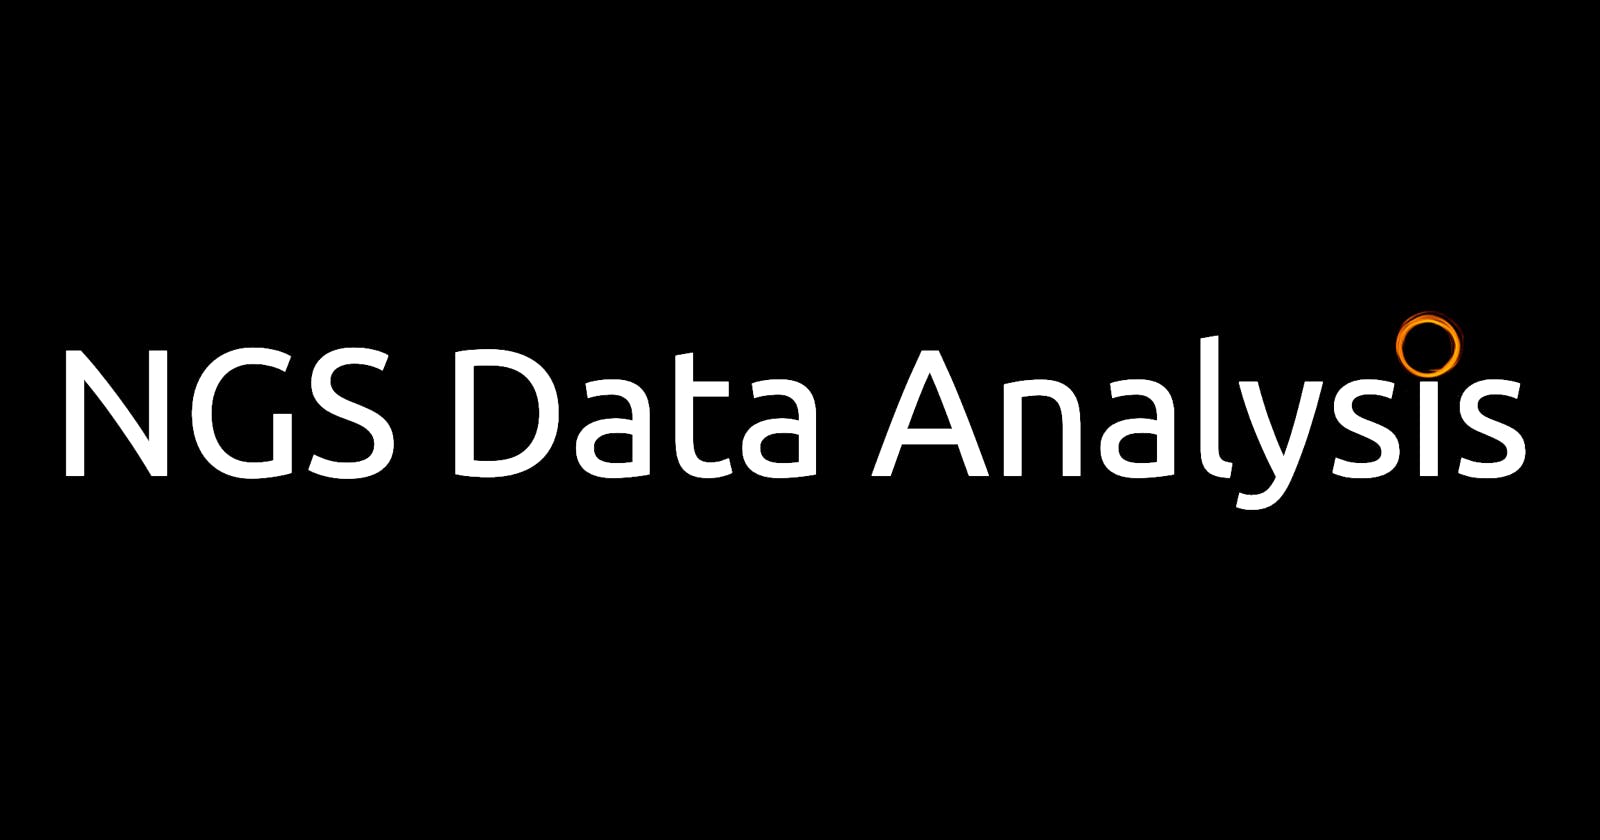 NGS Data Analysis: Nextflow DSL2